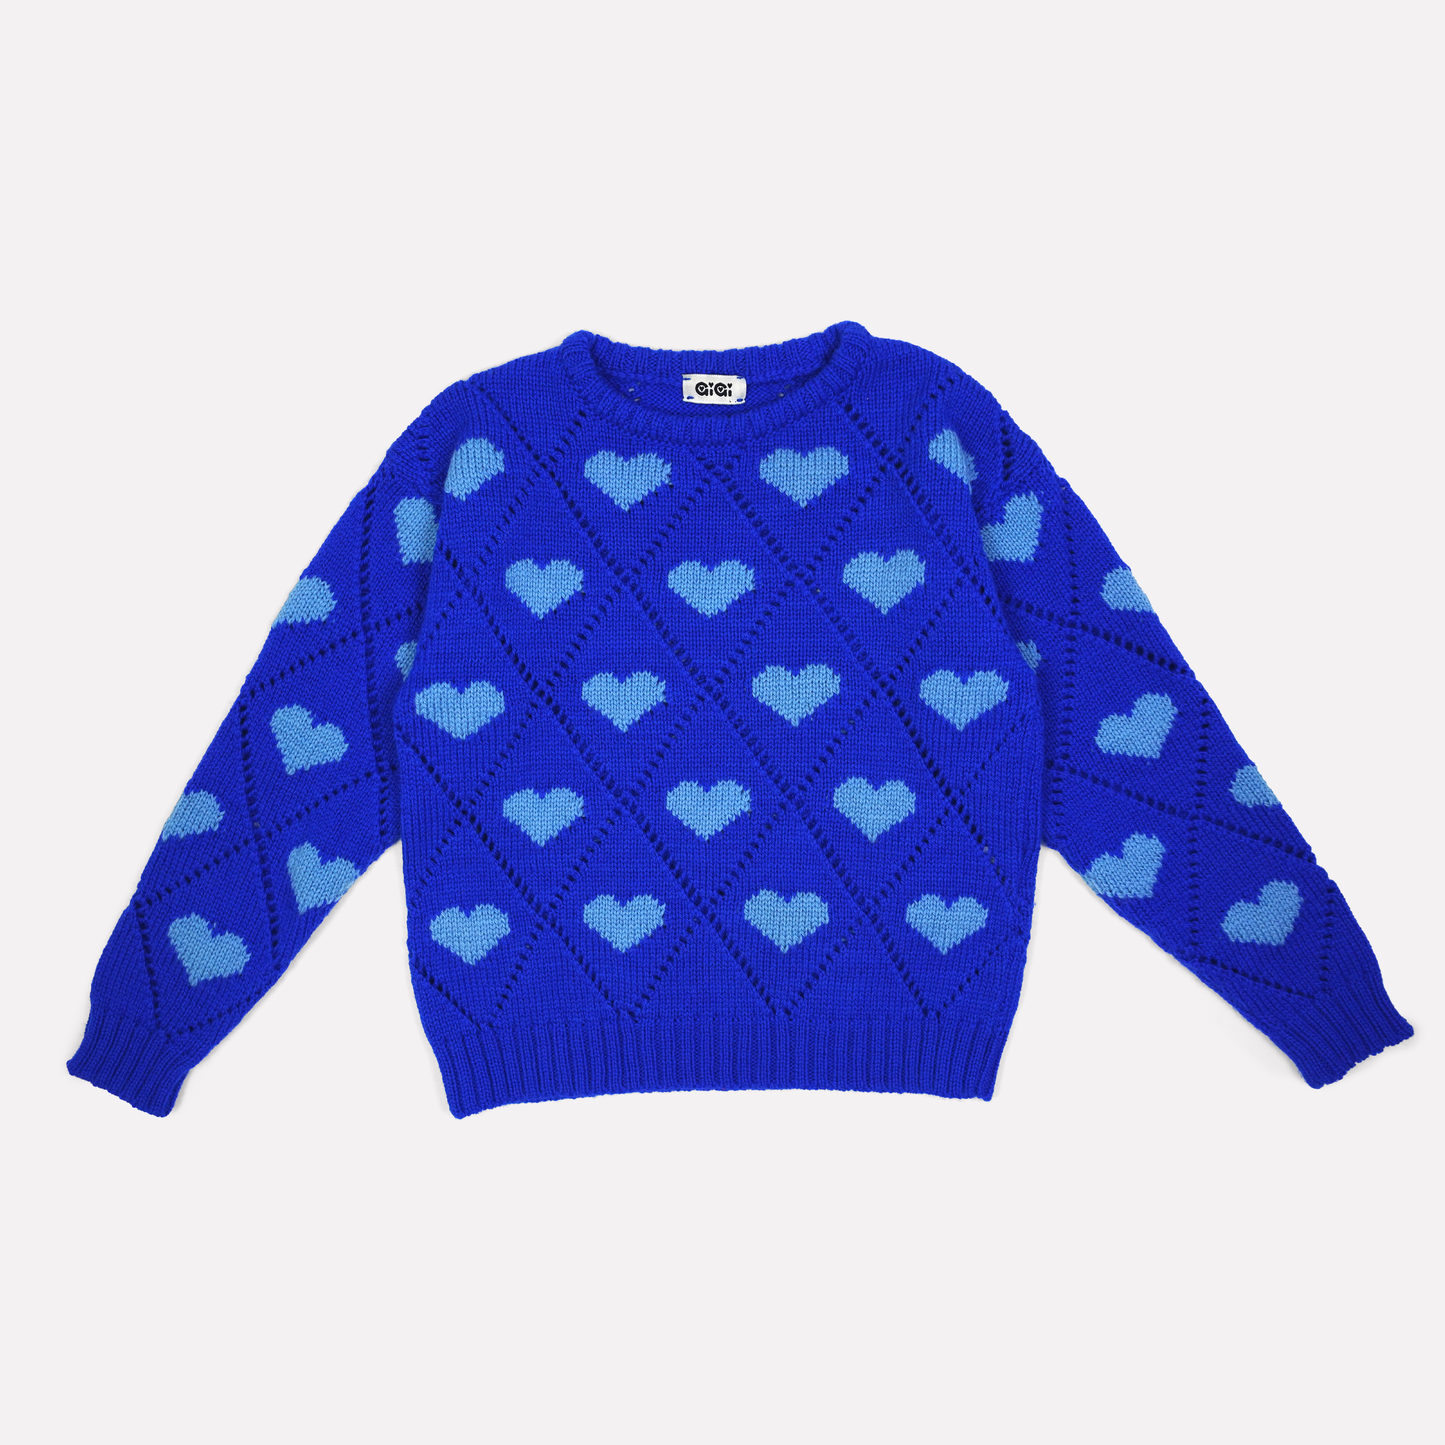 Love Sweater Mini in Cobalt Blue